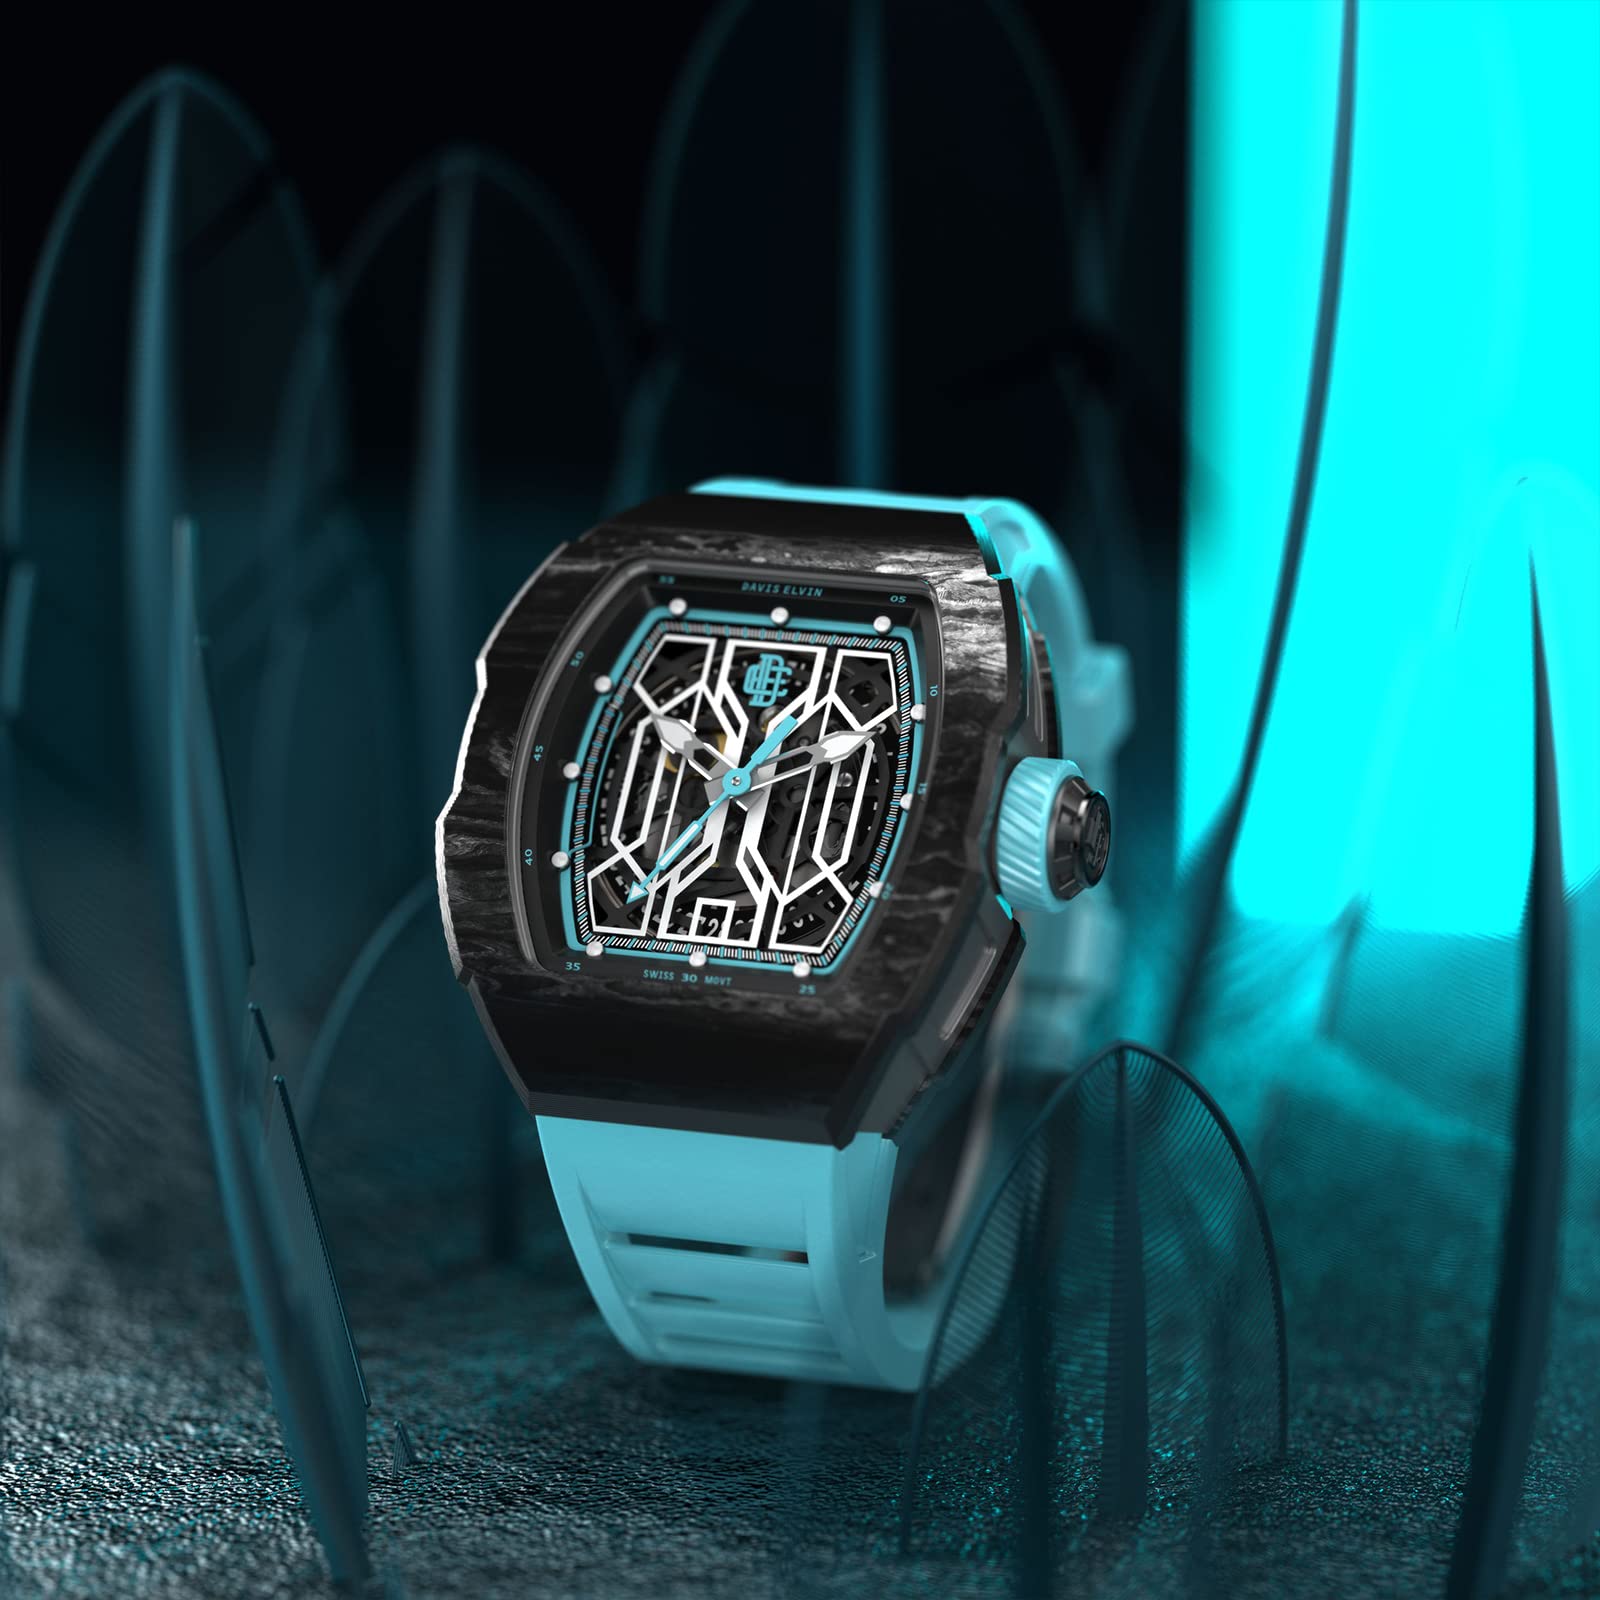 DAVIS ELVIN Global Popular Men's Wristwatch Birthday Gift Surprise for Men Tonneau Design Wrist Watch Swiss Automatic Movement Mechanical Watch Carbon Fiber Gentleman Watch-DR05-1